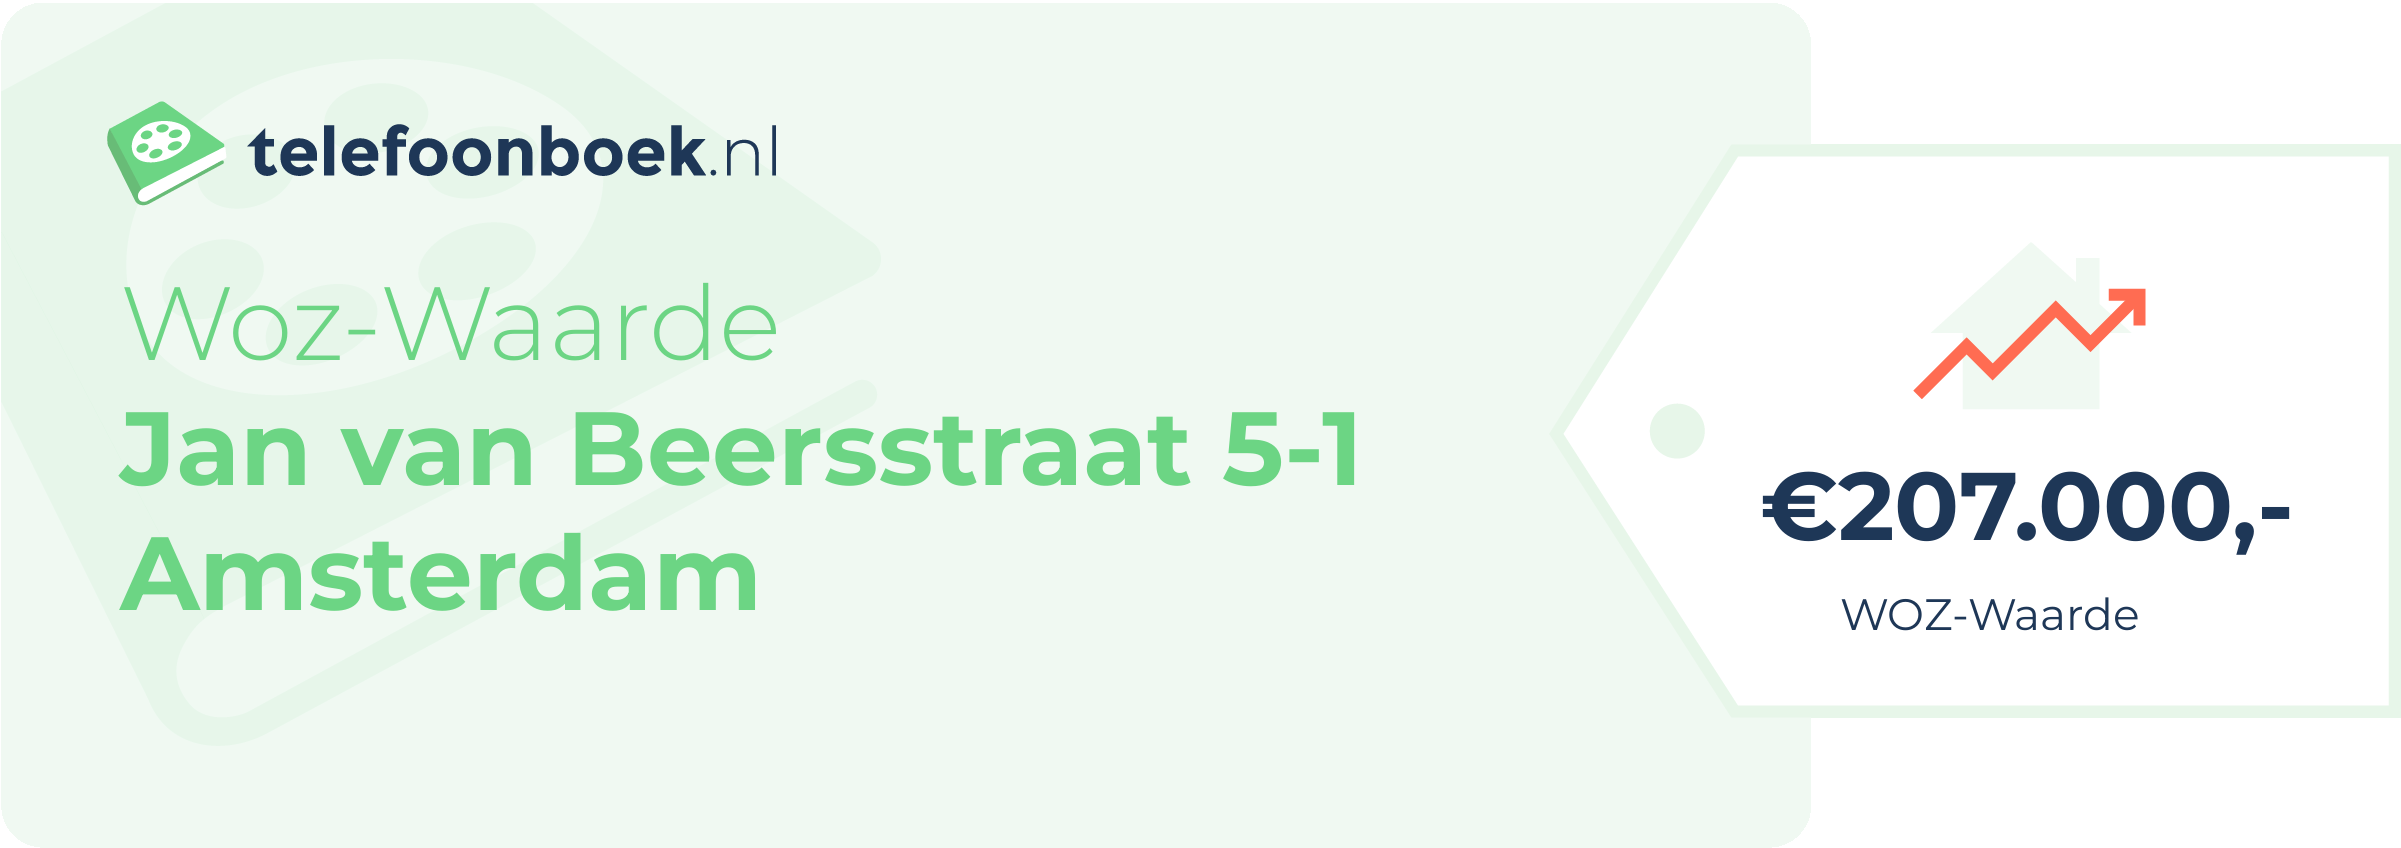 WOZ-waarde Jan Van Beersstraat 5-1 Amsterdam